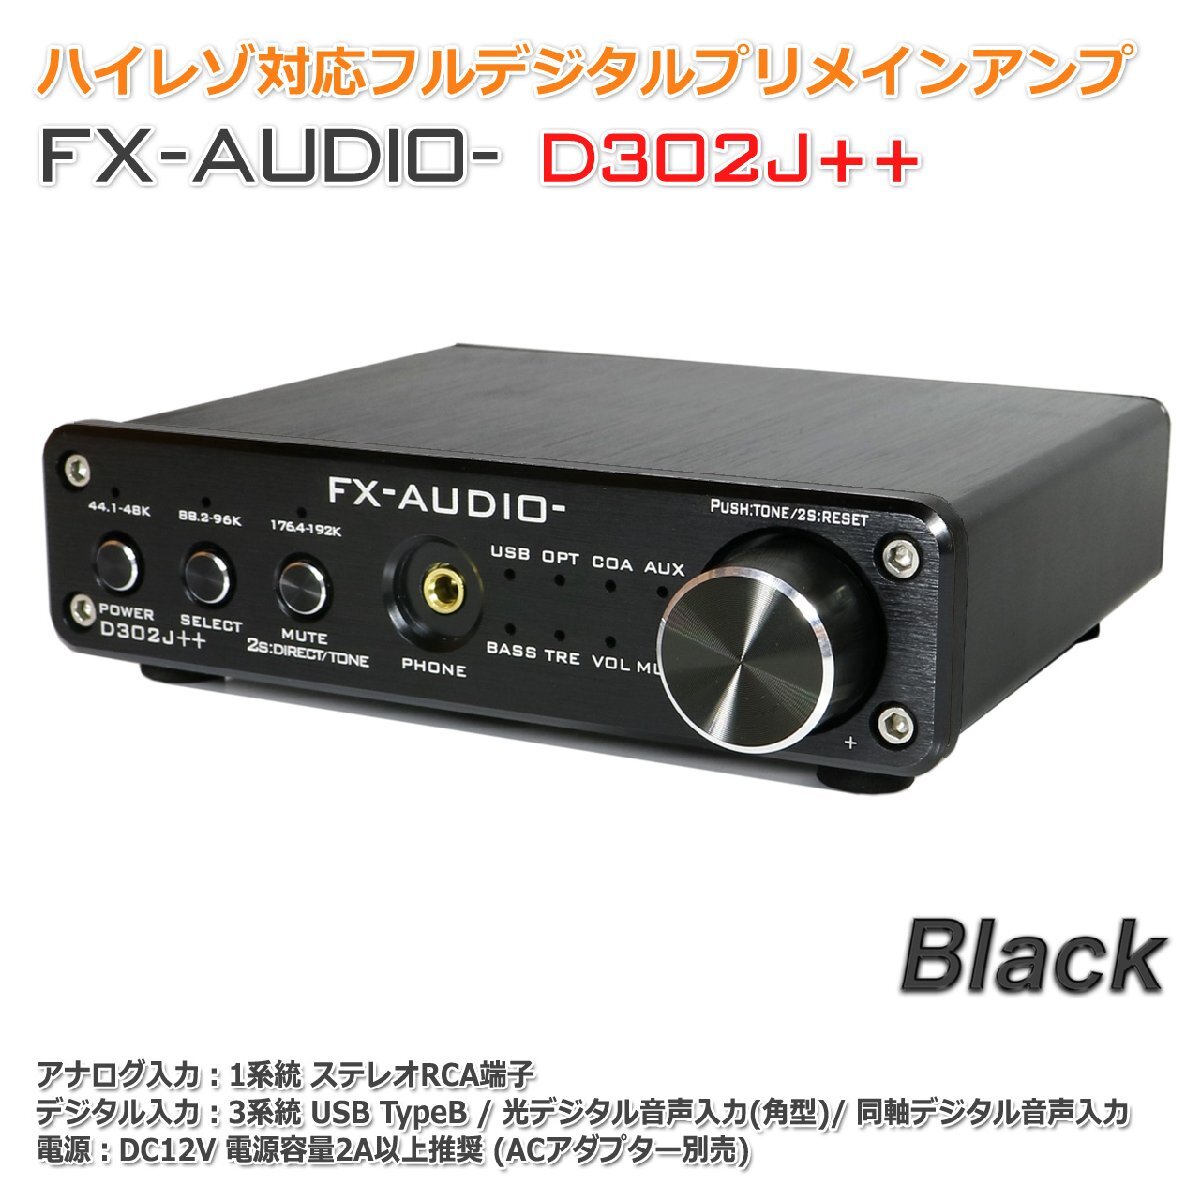 FX-AUDIO- D302J++[ブラック] ハイレゾ対応デジタルアナログ4系統入力・フルデジタルアンプ USB 光 オプティカル 同軸 最大24bit 192kHz_画像1